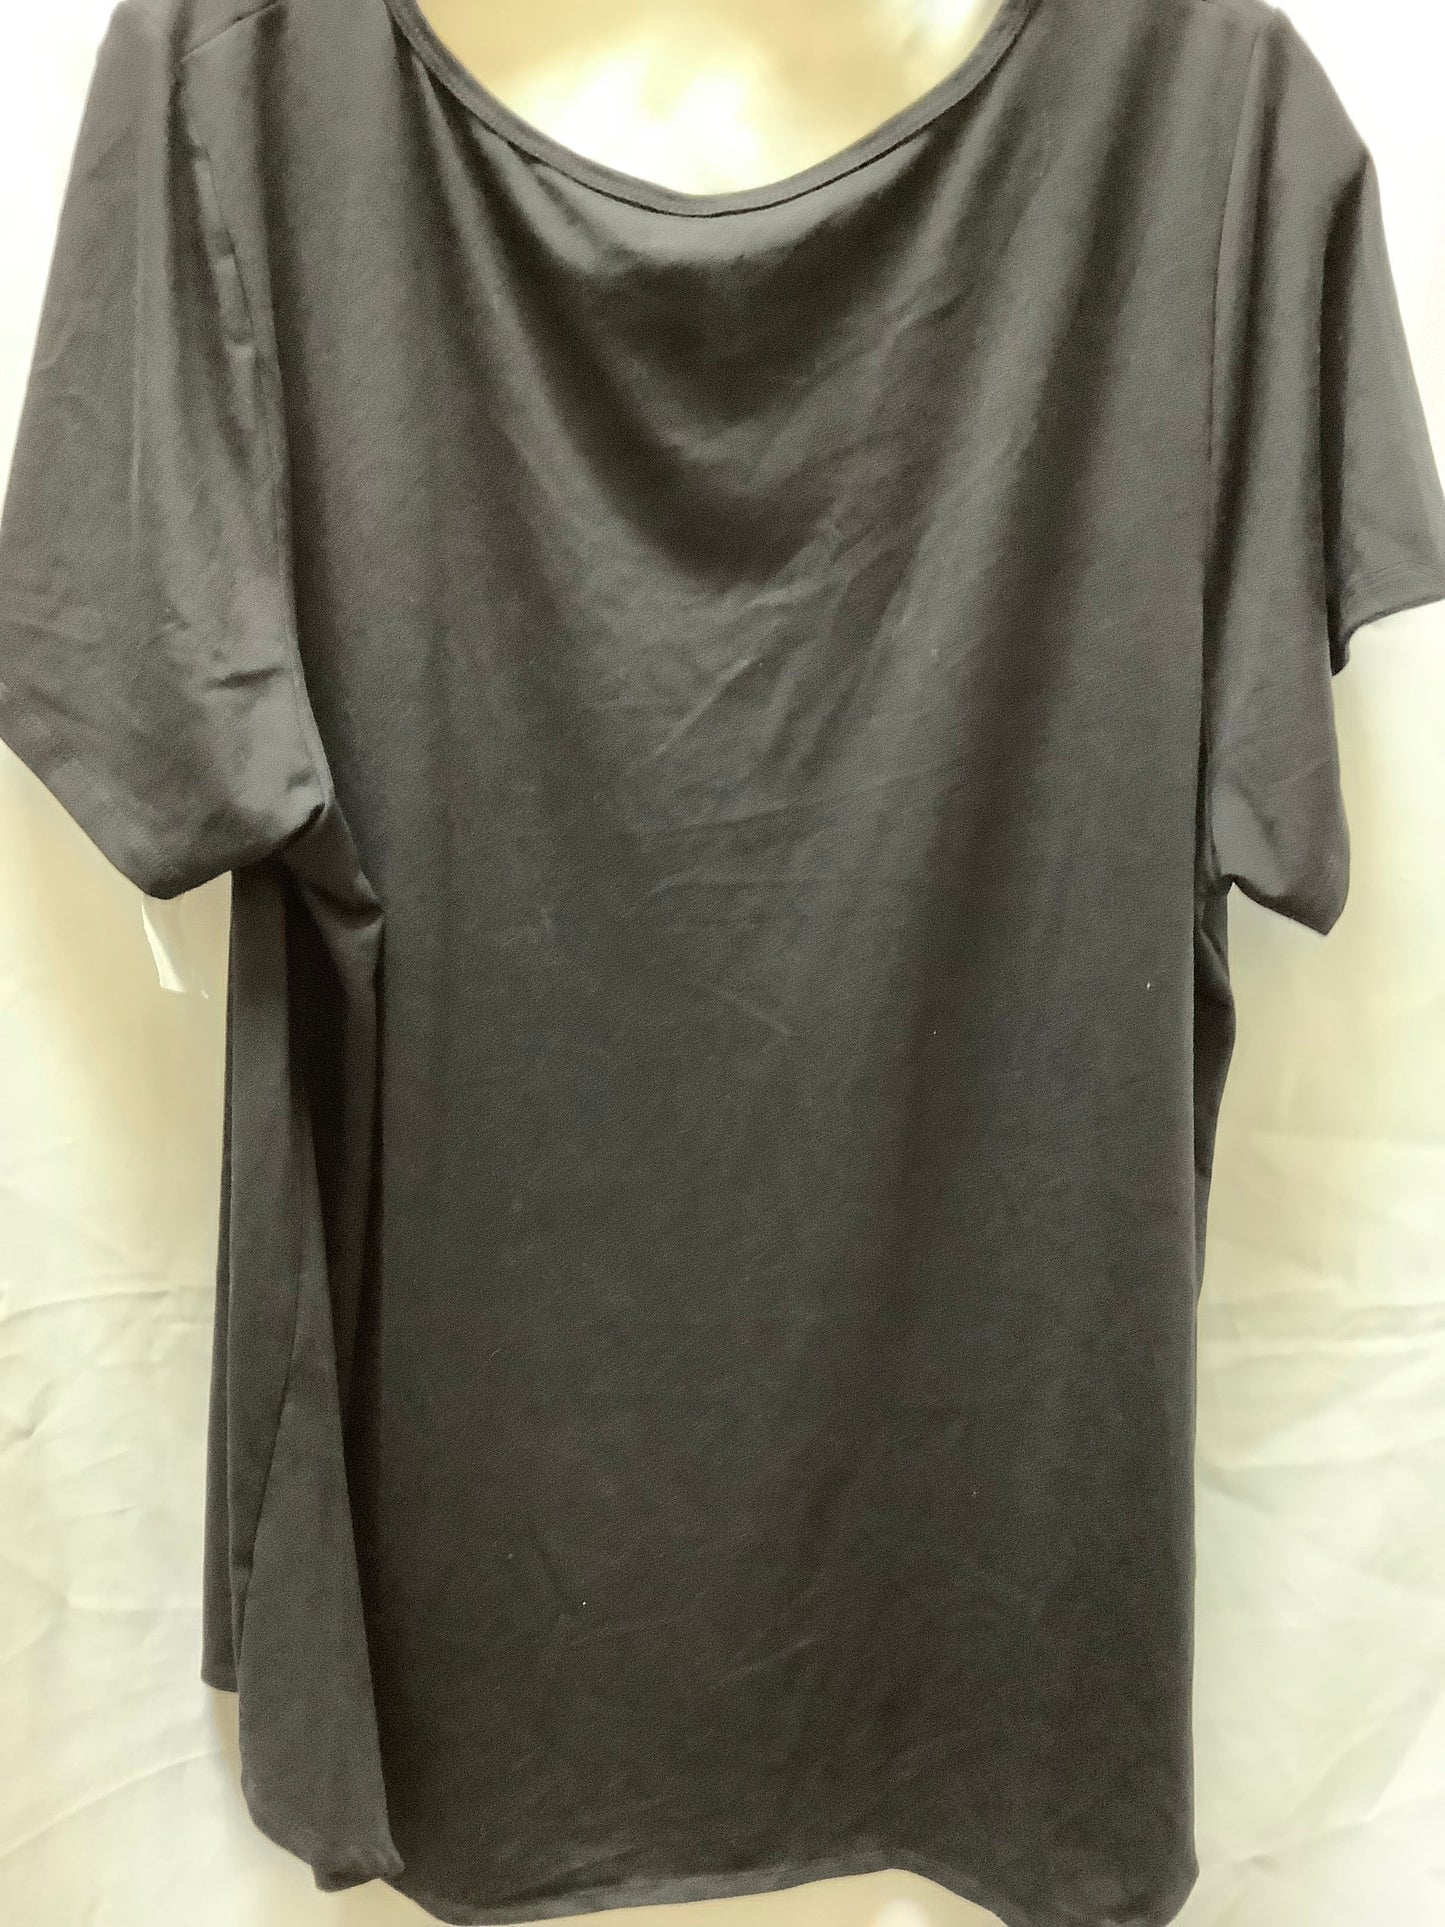 Top Short Sleeve Basic By Lularoe  Size: 3x